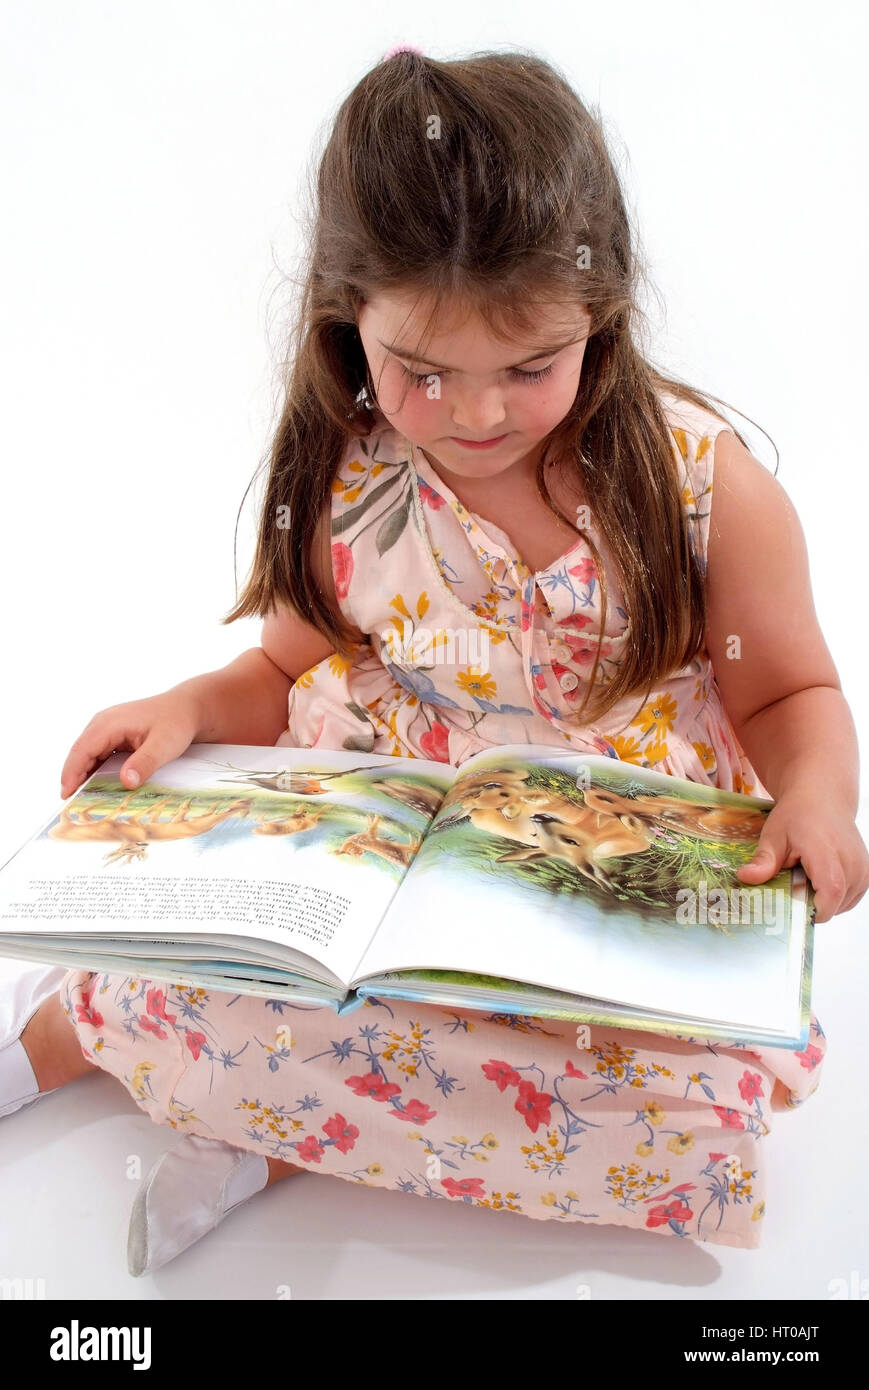 M?dchen mit Kinderbuch - girl with children's book Stock Photo